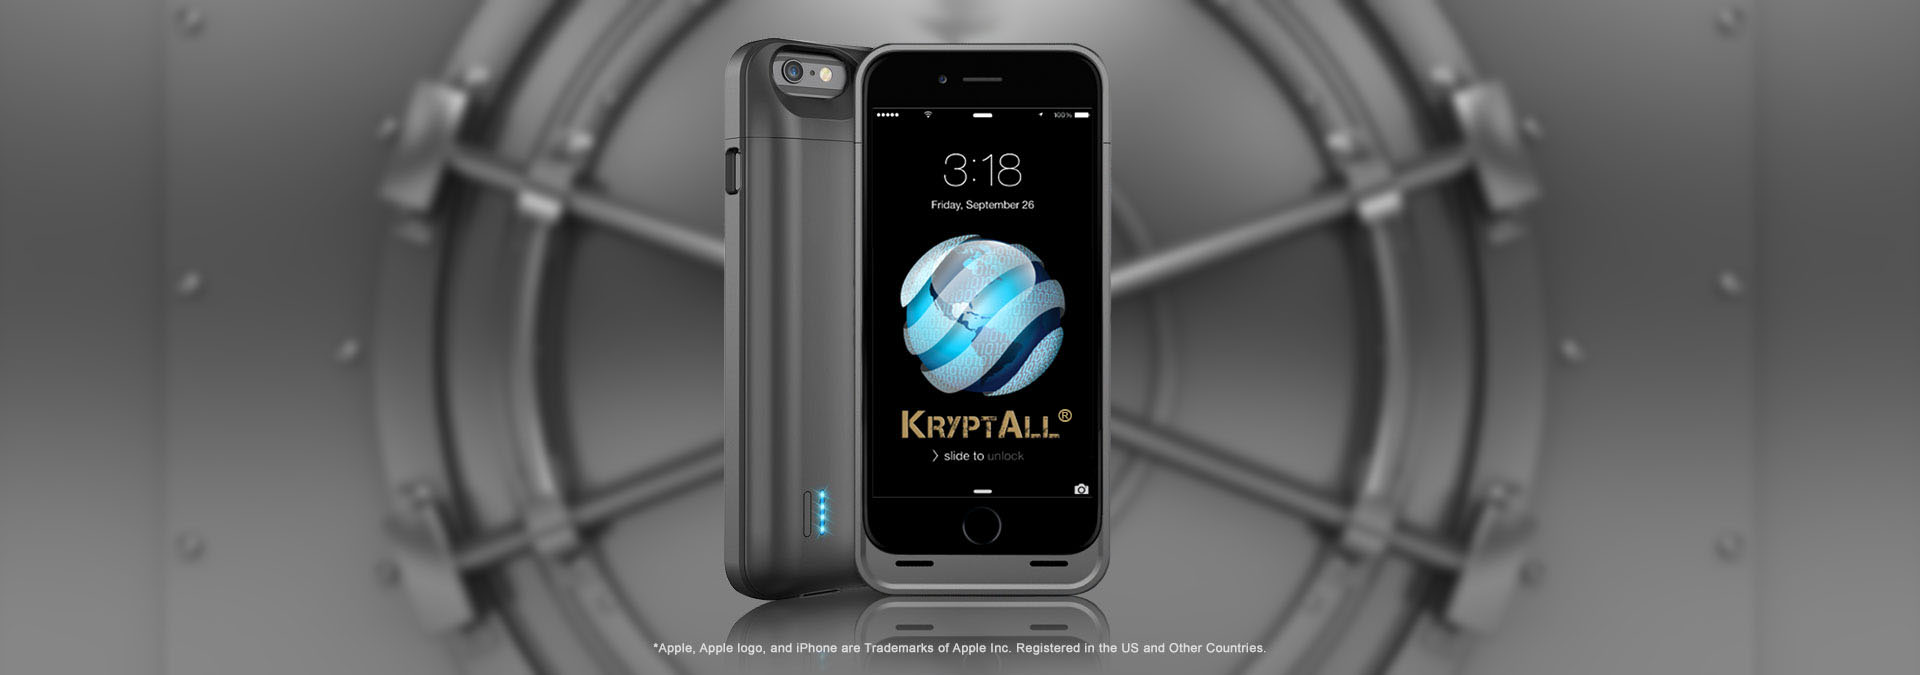 KryptAll phone